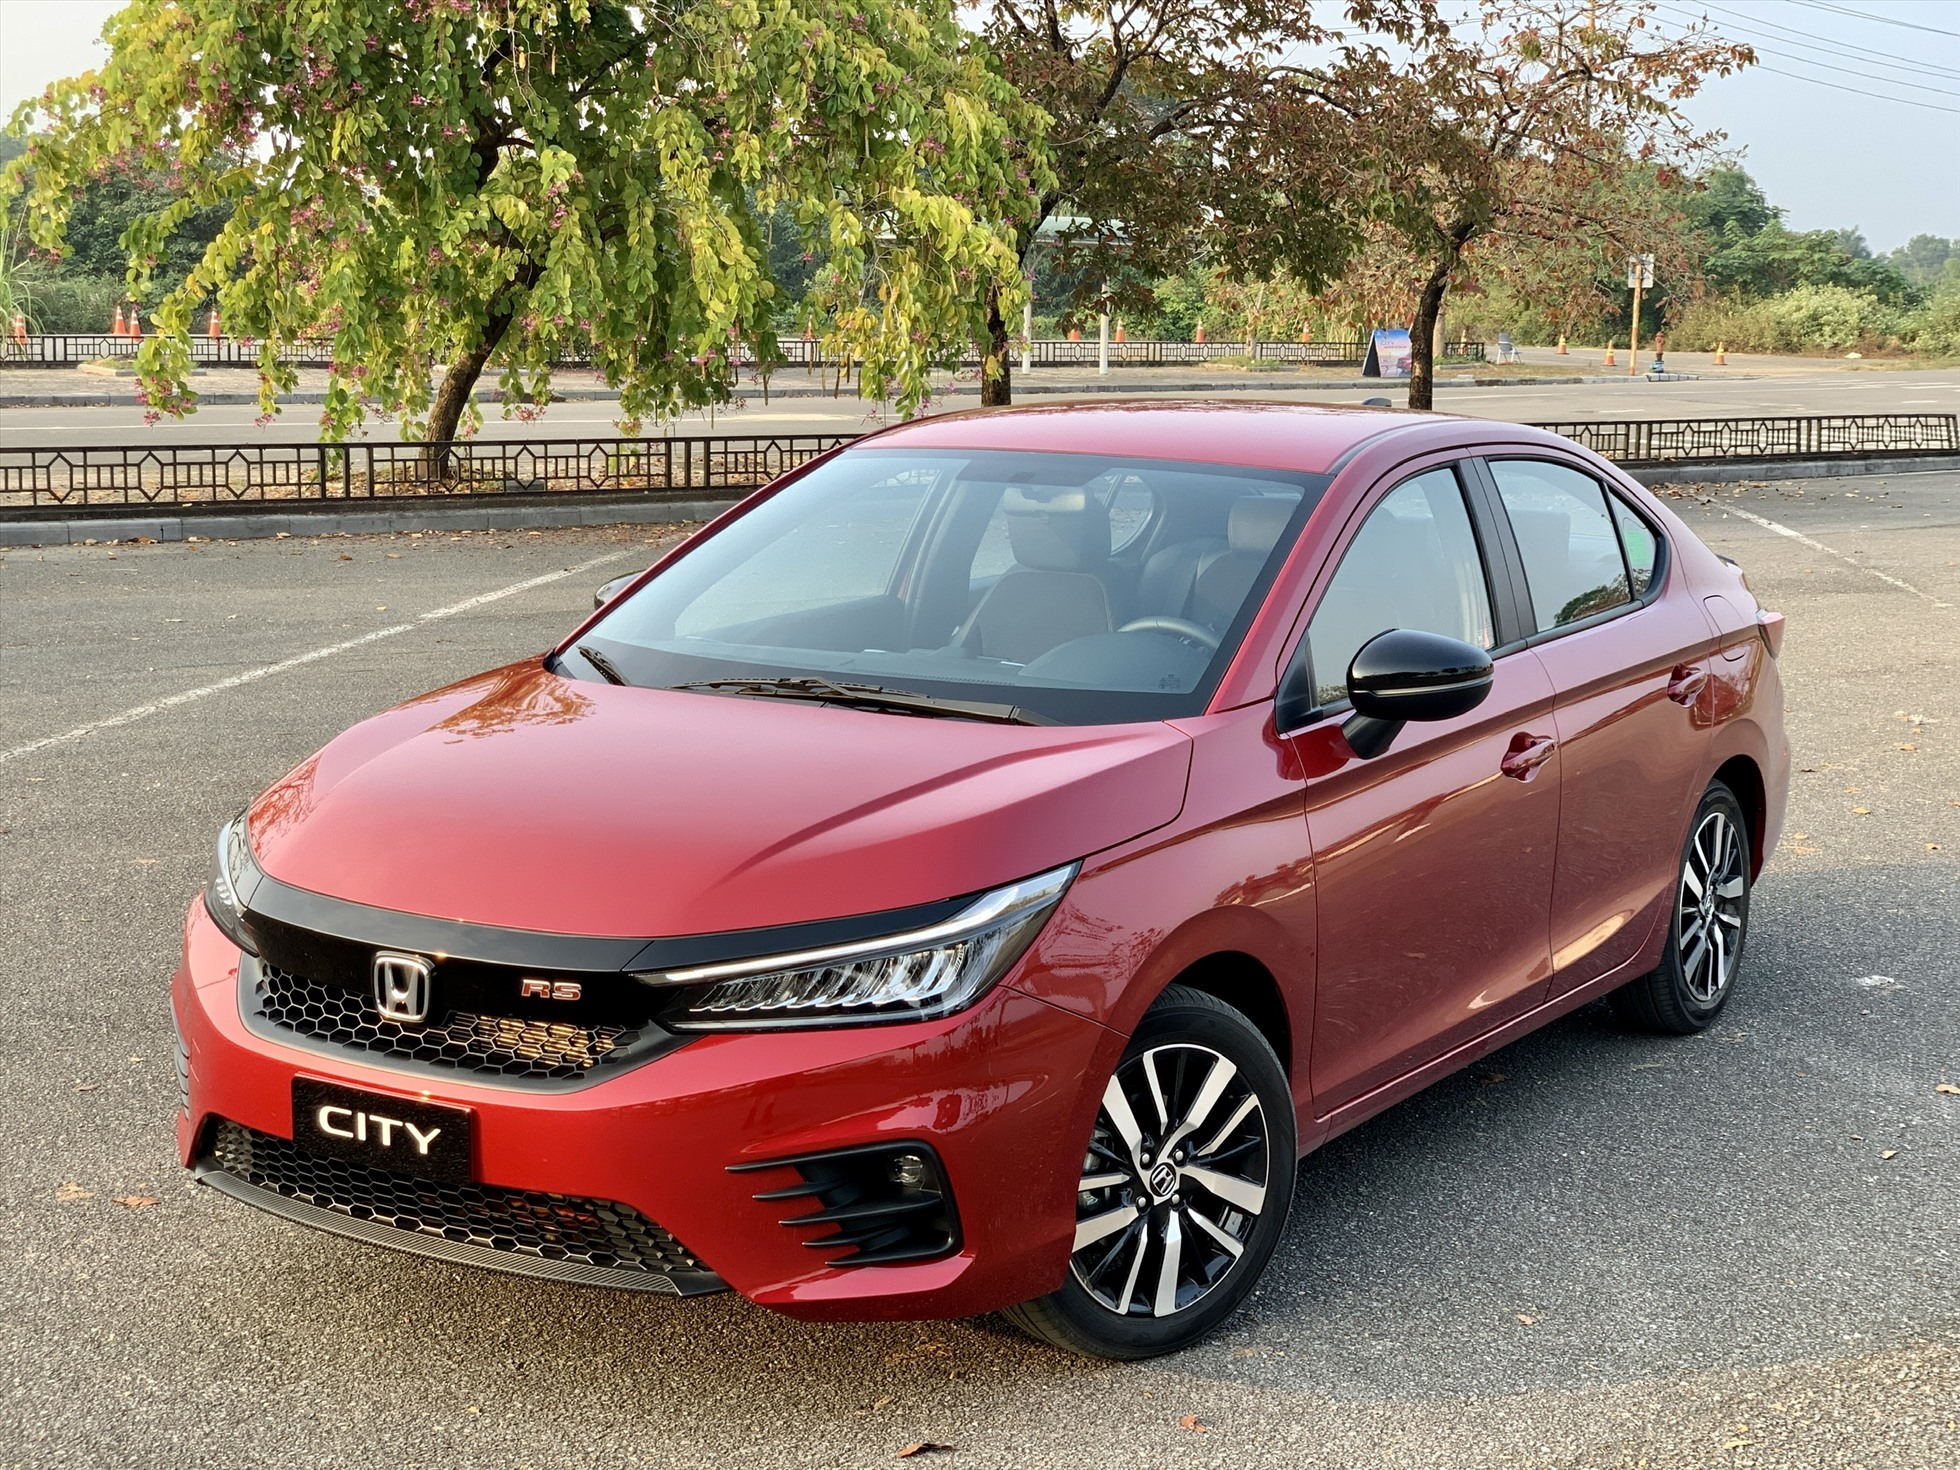 Doanh số 2.451 xe bán ra giúp Honda City lọt top 10 ôtô ăn khách nhất Việt Nam quý đầu tiên của năm, đồng thời mẫu xe này vươn lên trên Vios giành vị trí thứ 2 trong phân khúc sedan hạng B trong 3 tháng đầu năm 2023. Thành tích này của City phần lớn đến từ việc hãng xe Honda đã tích cực thúc đẩy doanh số cho mẫu sedan chủ lực bằng ưu đãi 100% phí trước bạ trong tháng 3. City phiên bản hiện tại được trang bị động cơ 1.5L và có giá từ 529-599 triệu đồng cho 3 phiên bản. Ảnh: Khánh Linh.